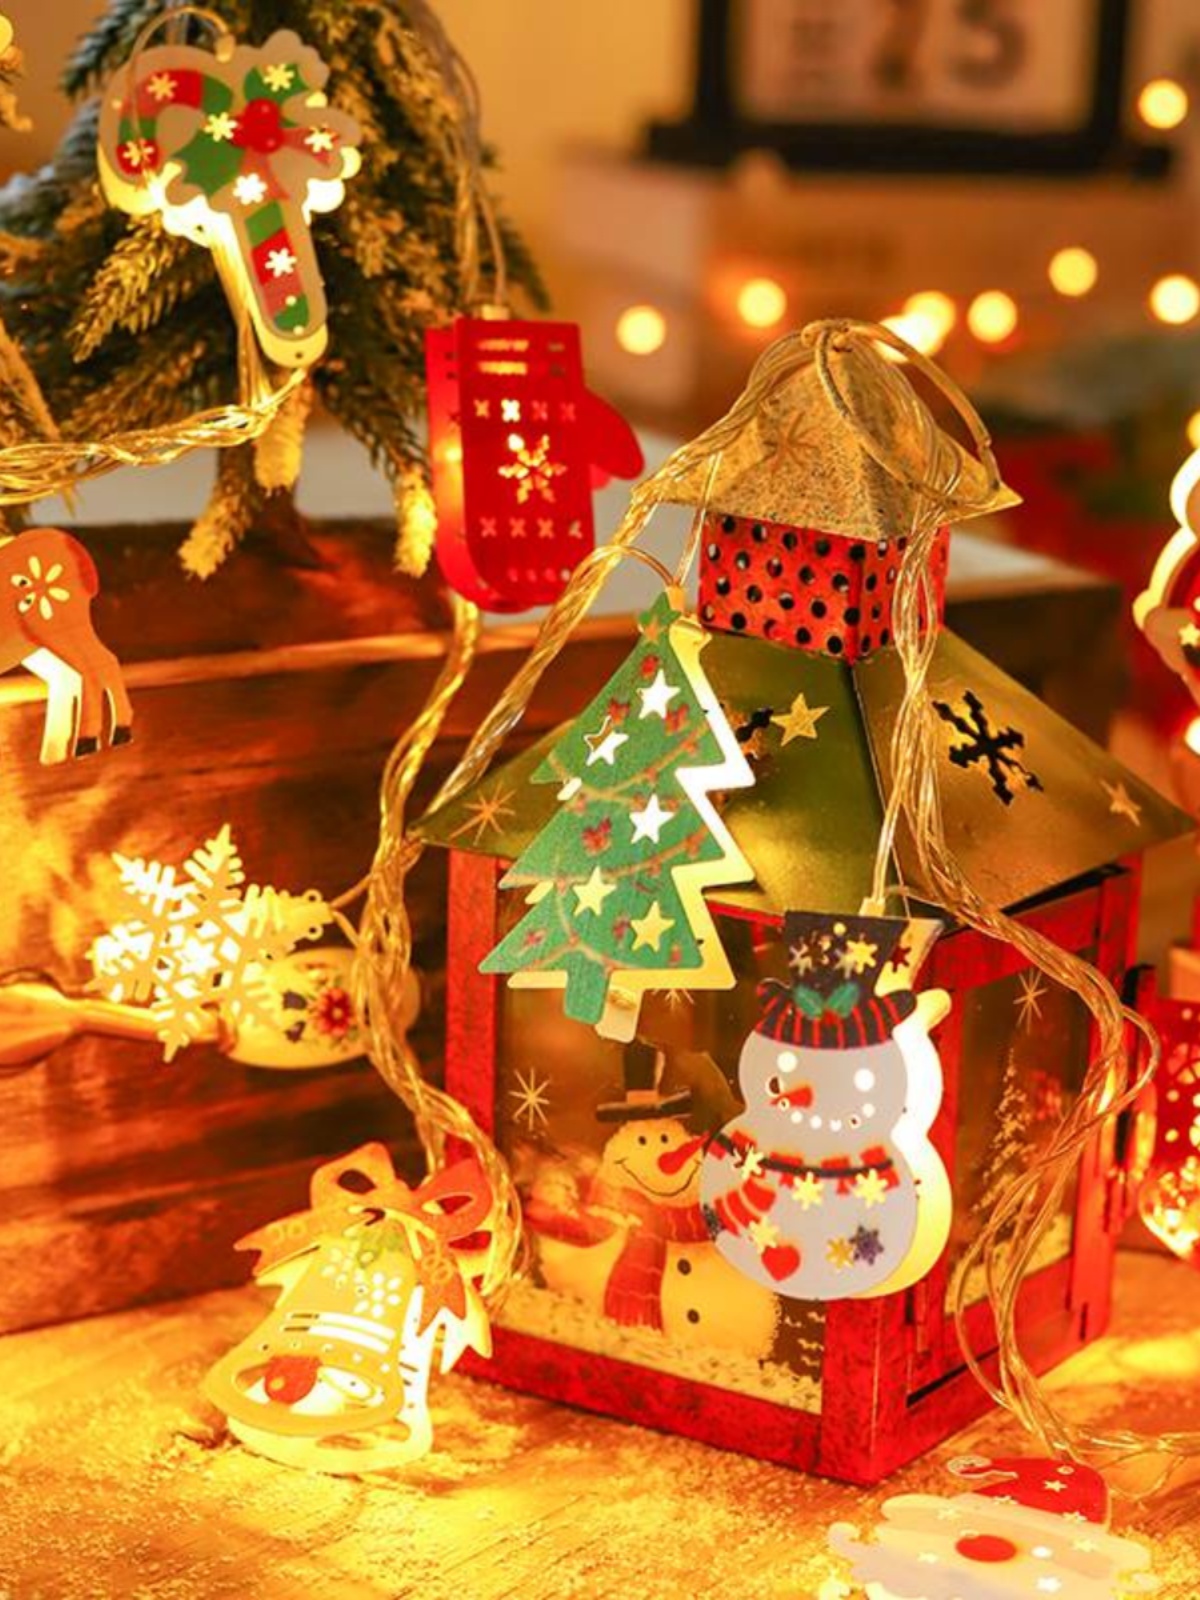 新品彩灯圣诞节装饰用品店铺橱窗场景布置氛围灯节日活动圣诞树小